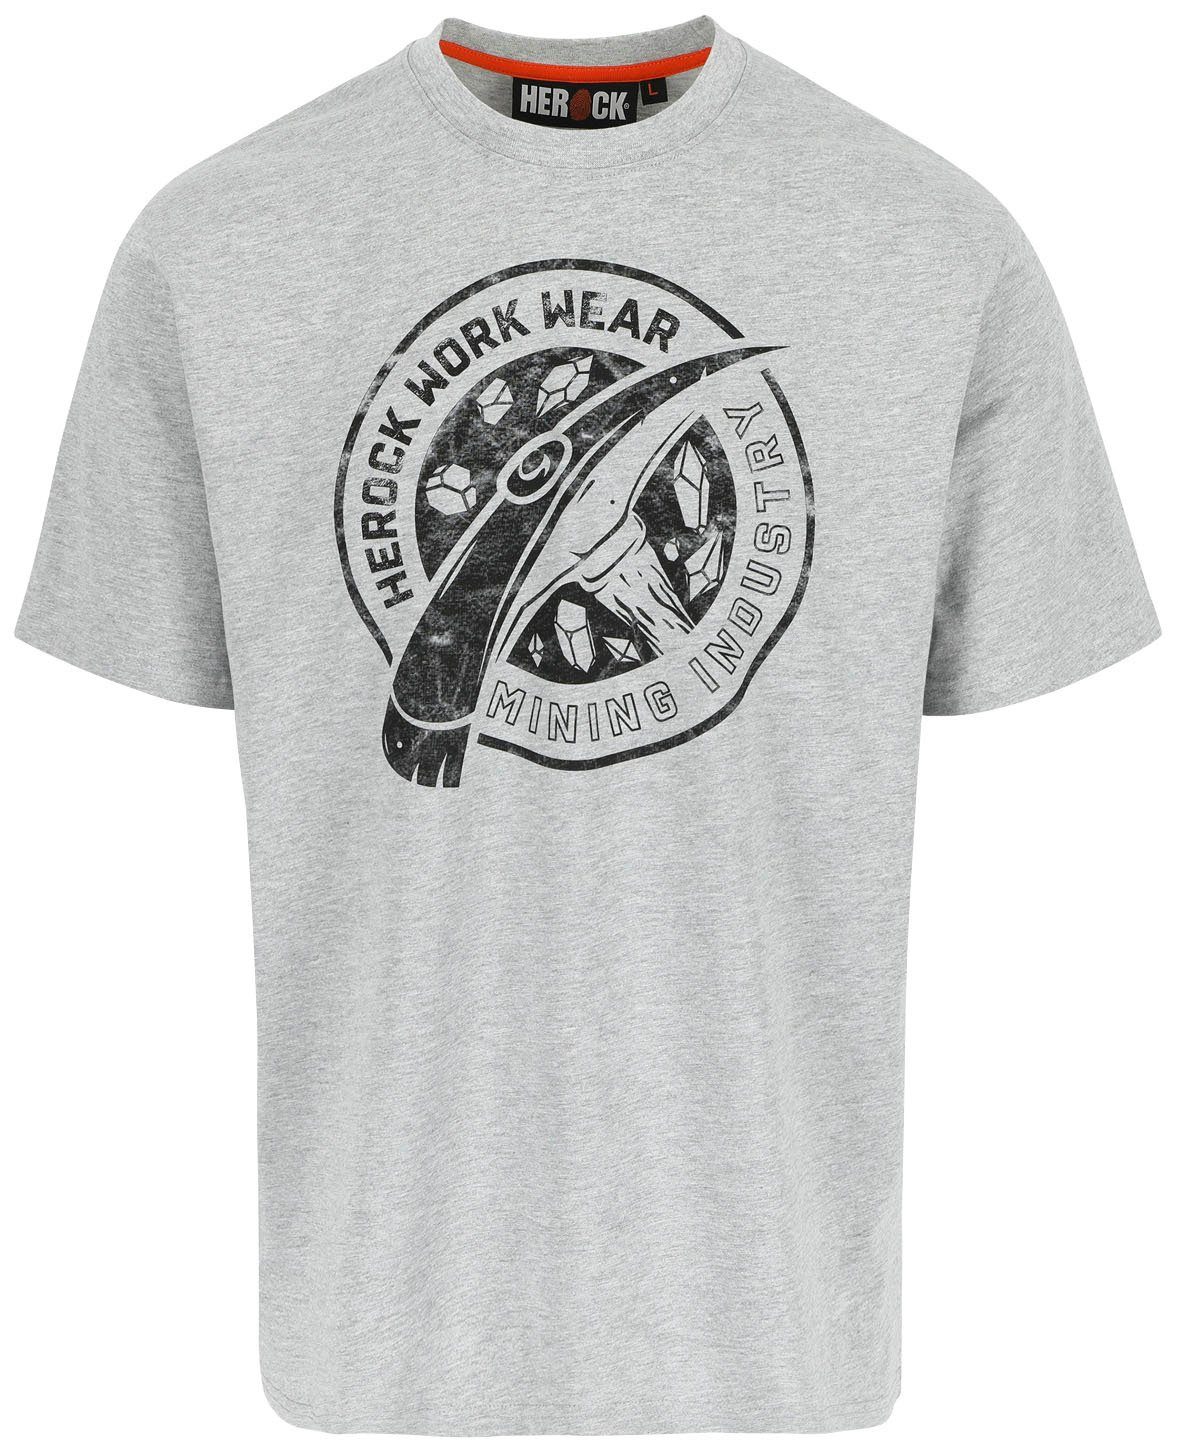 Herock T-Shirt Worker Limited Edition, in verschiedene Farben erhältlich hellgrau | T-Shirts